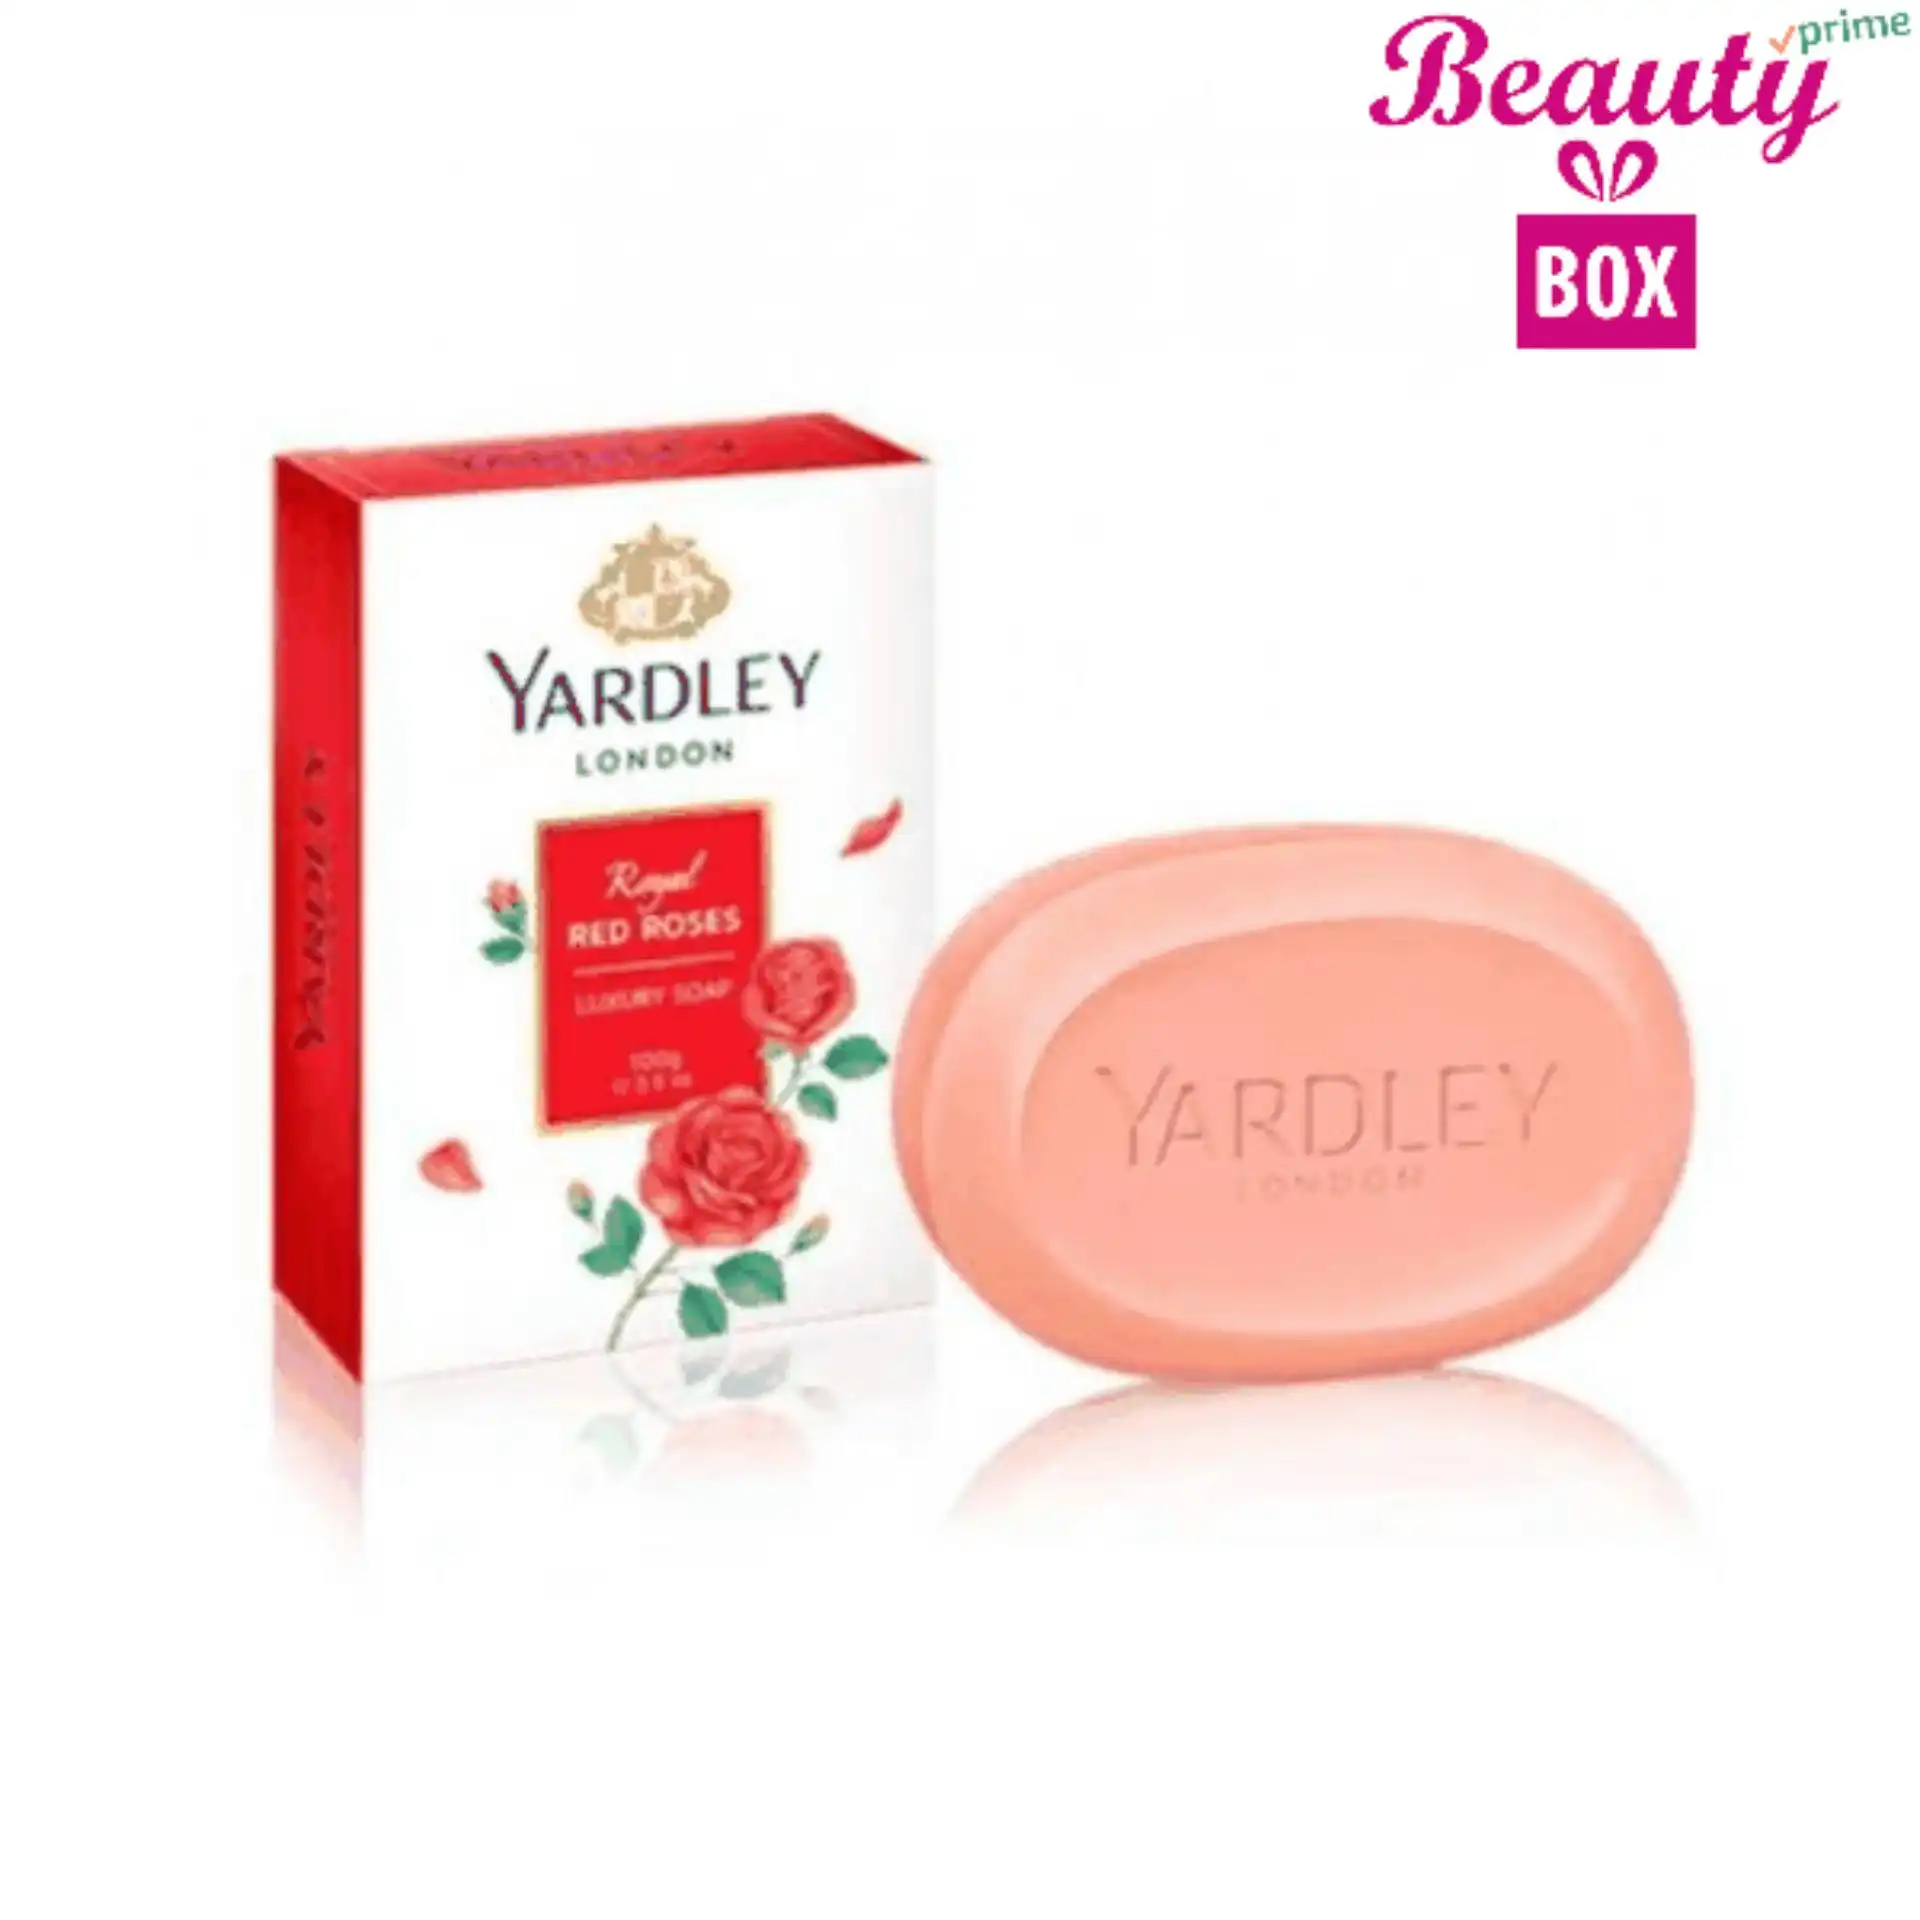 Yardley Royal Red Roses Soap